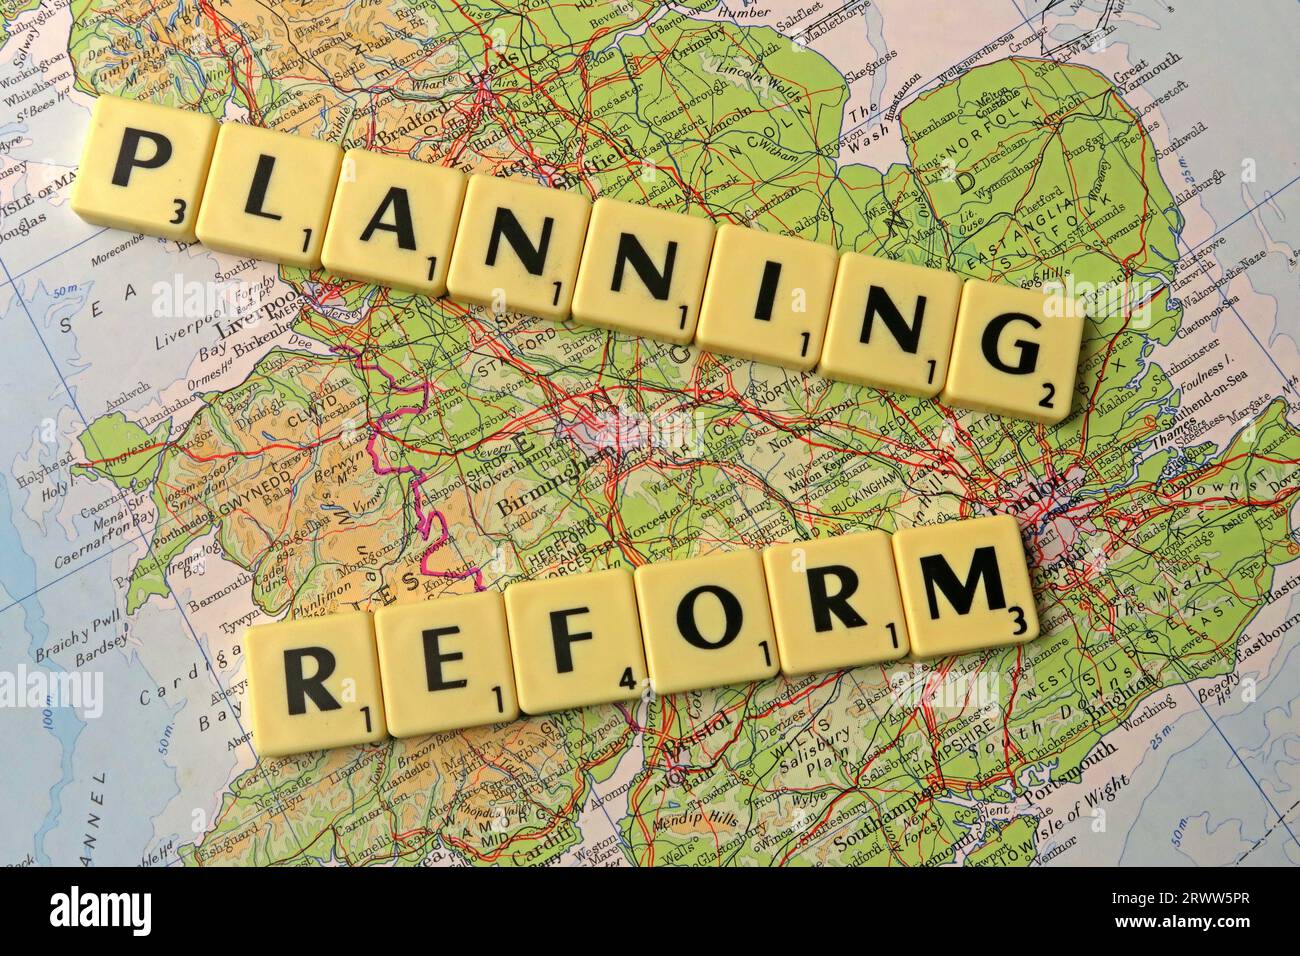 Planungs-Reform in Scrabble Buchstaben und Worte auf einer Karte von England - lokale Entwicklung und Gebäudekontrolle geschrieben Stockfoto